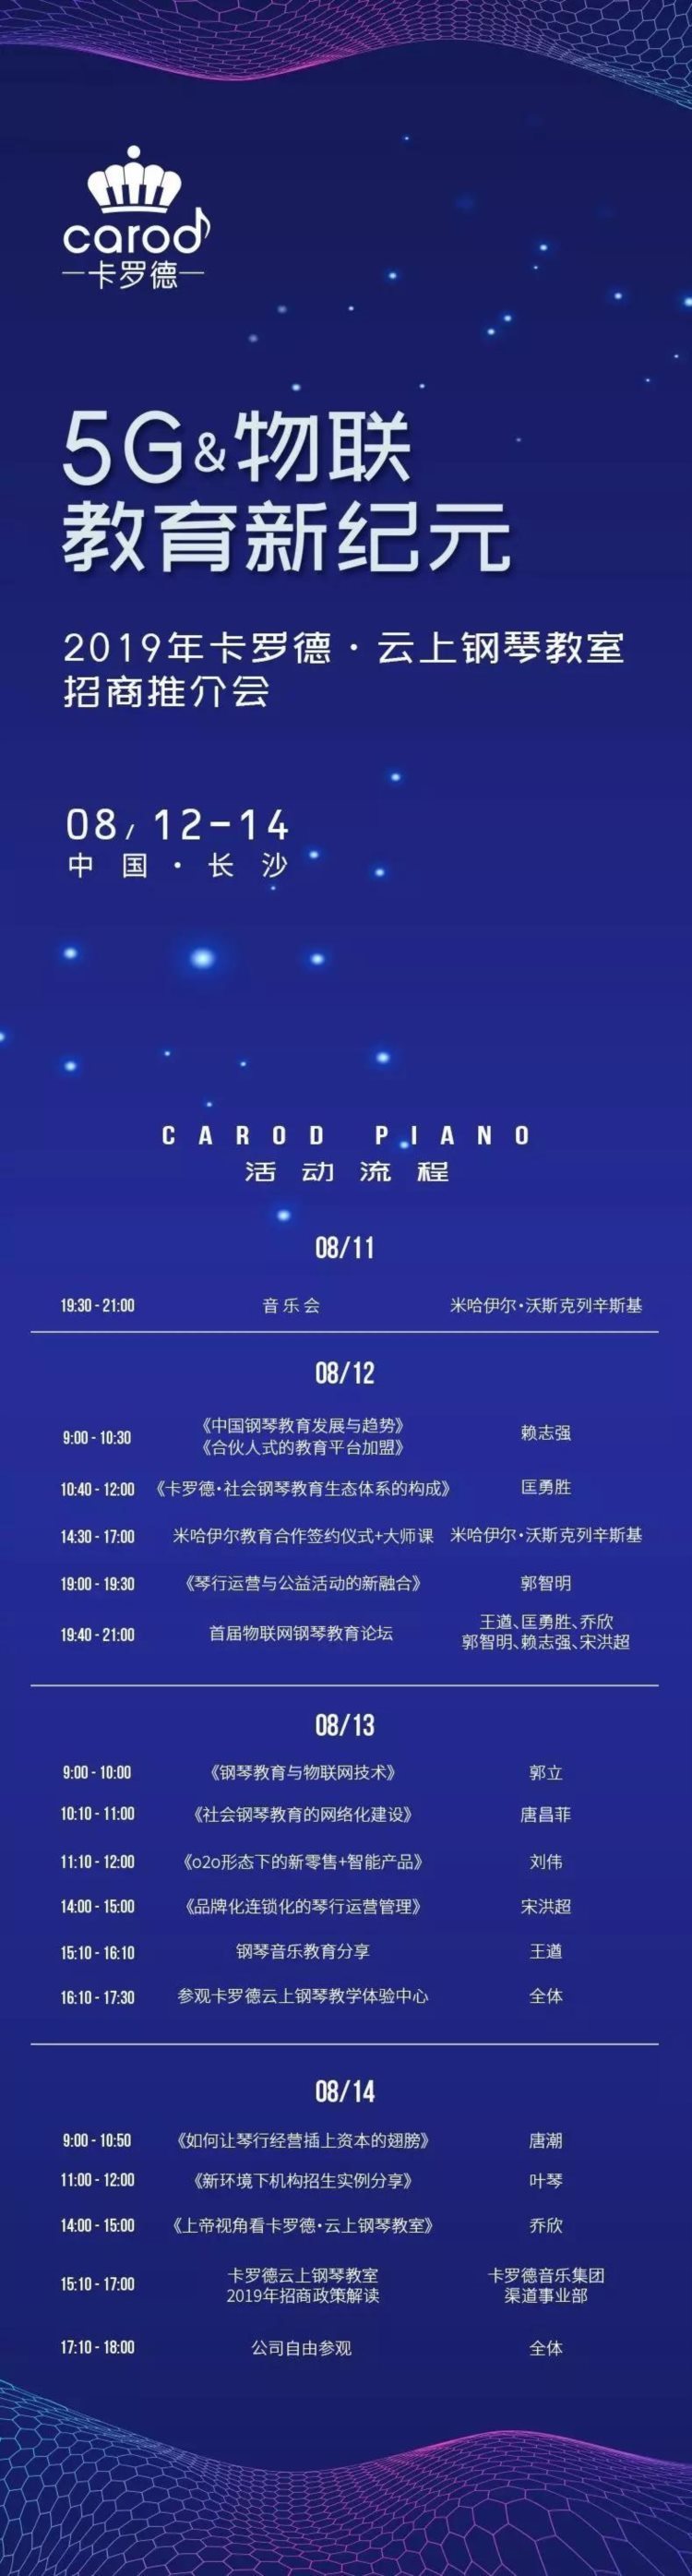 2019卡罗德·云上钢琴教室招商会即将开启